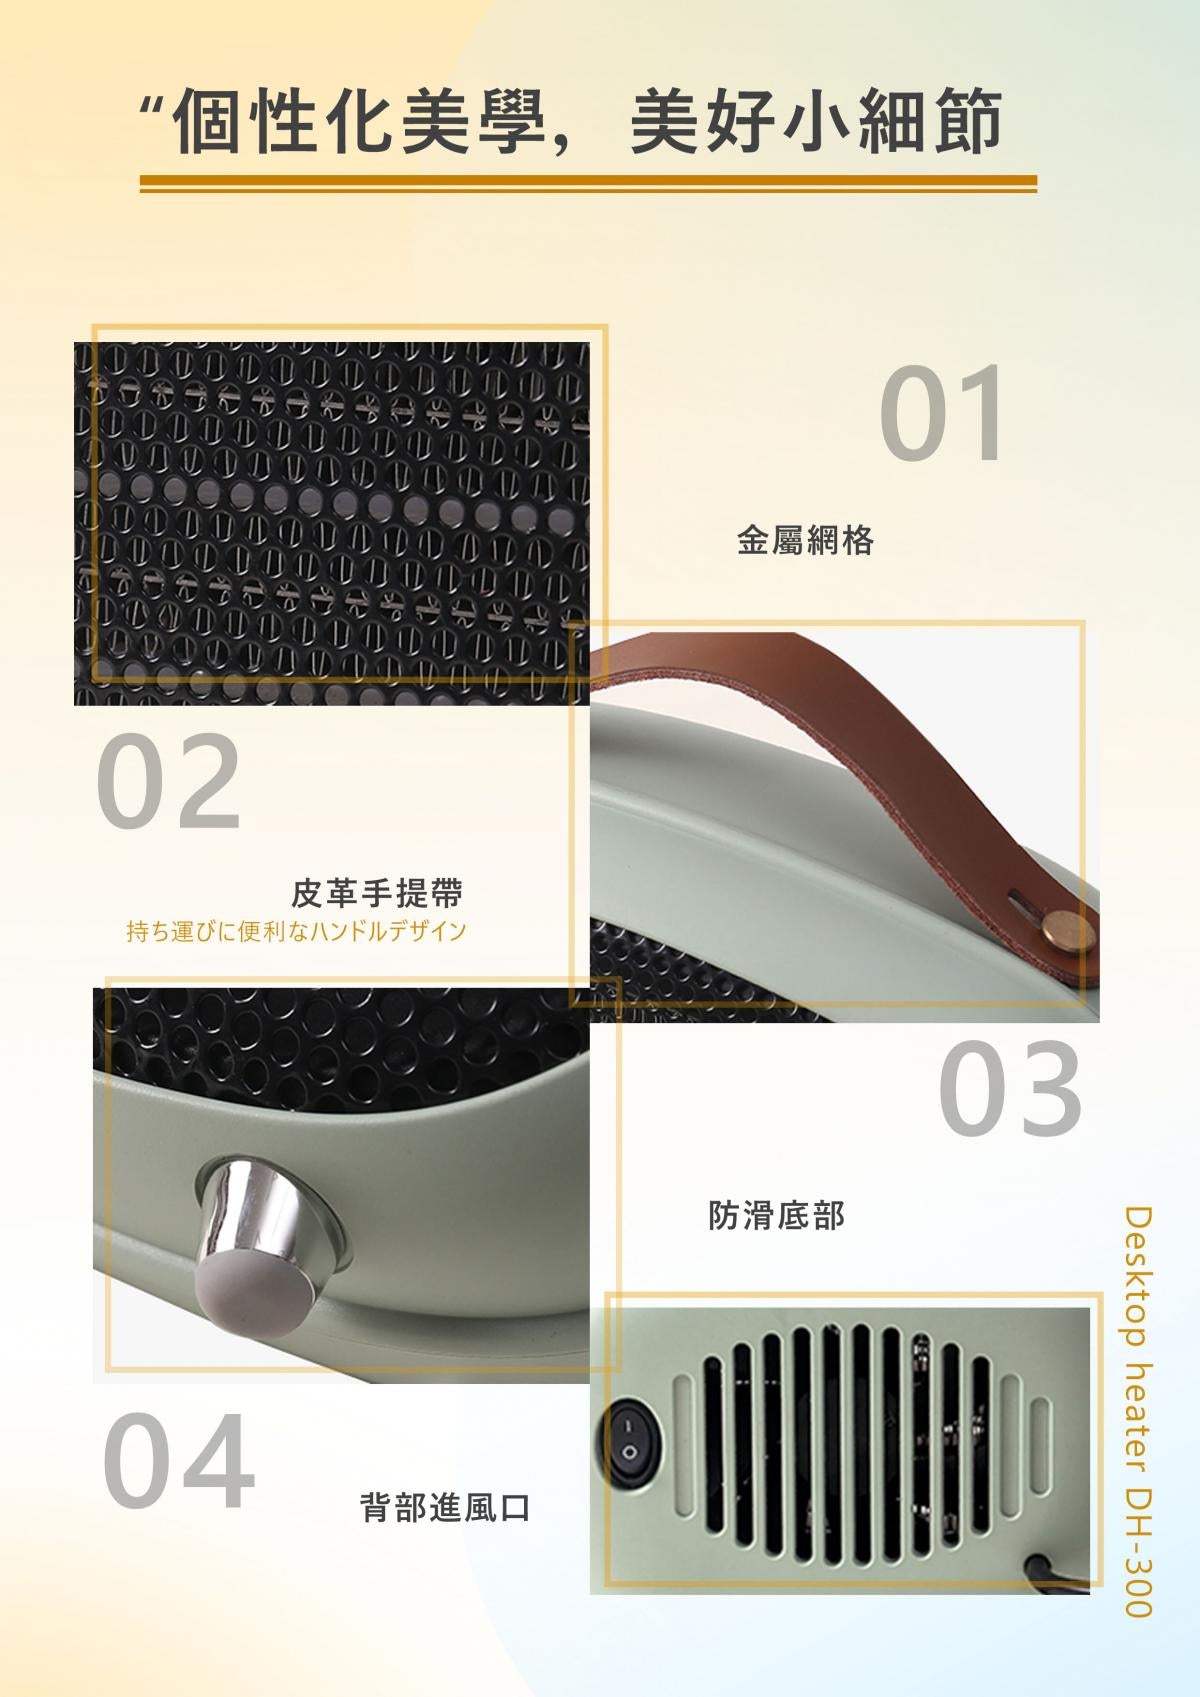 Kusa - 桌面型 PTC 陶瓷暖風電爐｜暖風機｜暖爐 [DH-300]